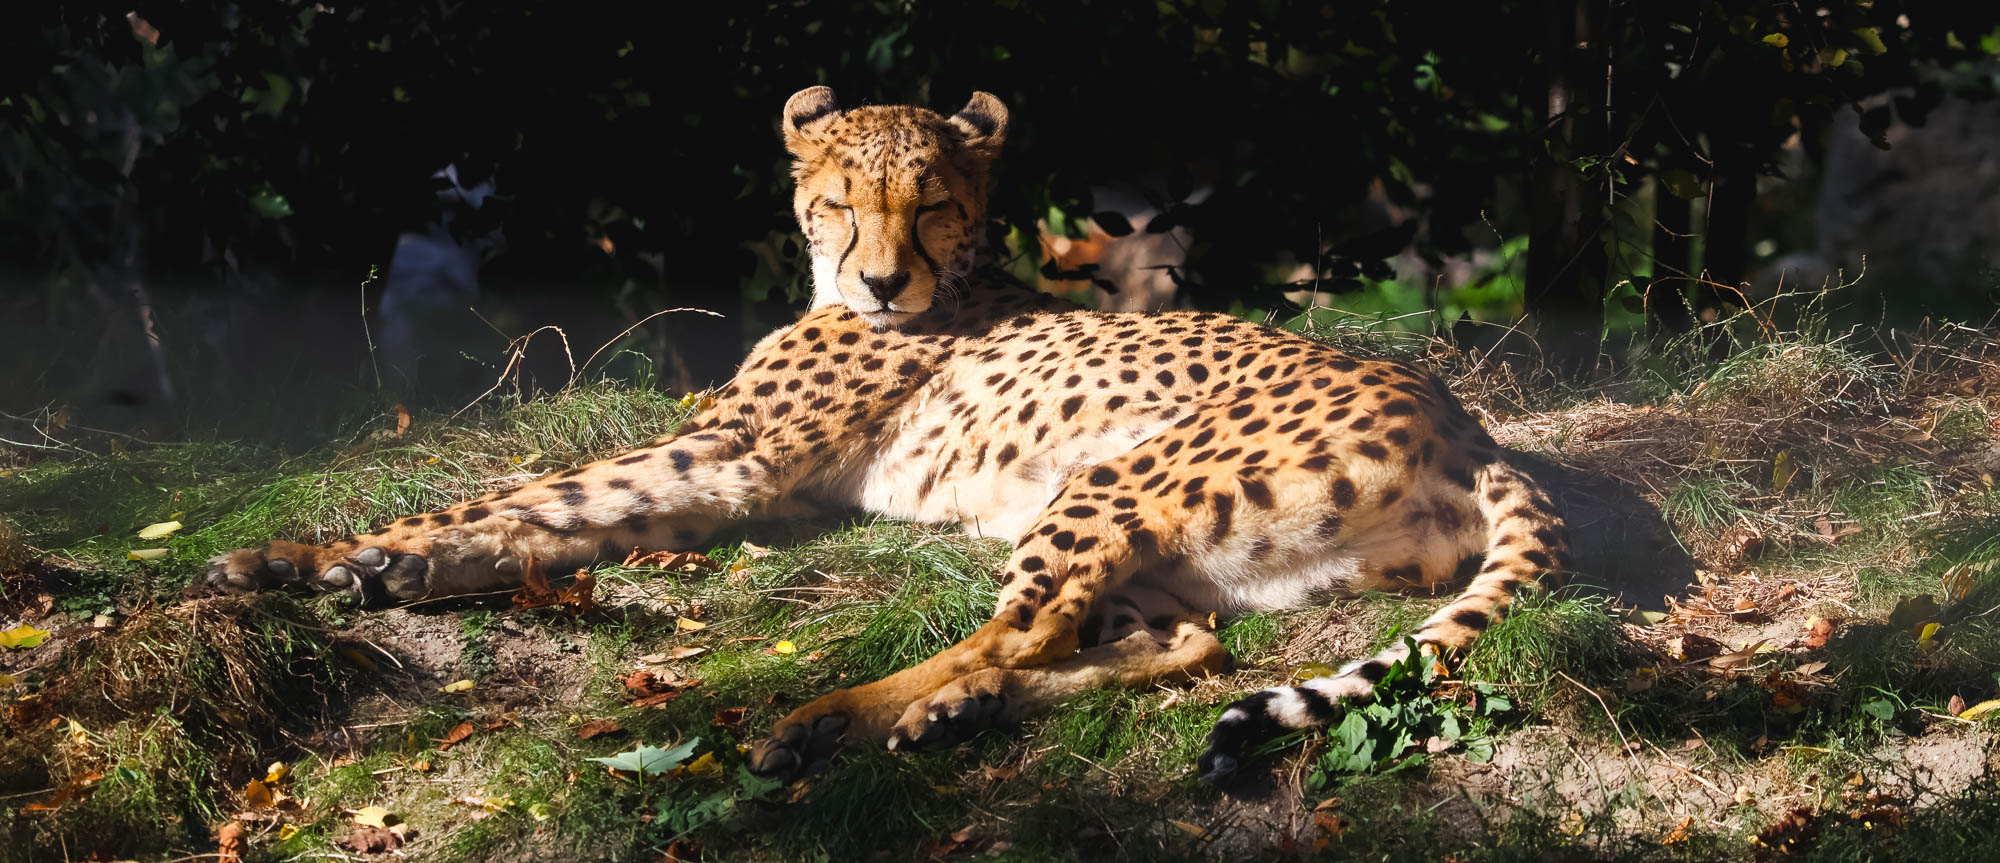 Cheetah close-up photo in Schönbrunn Zoo, Vienna 2